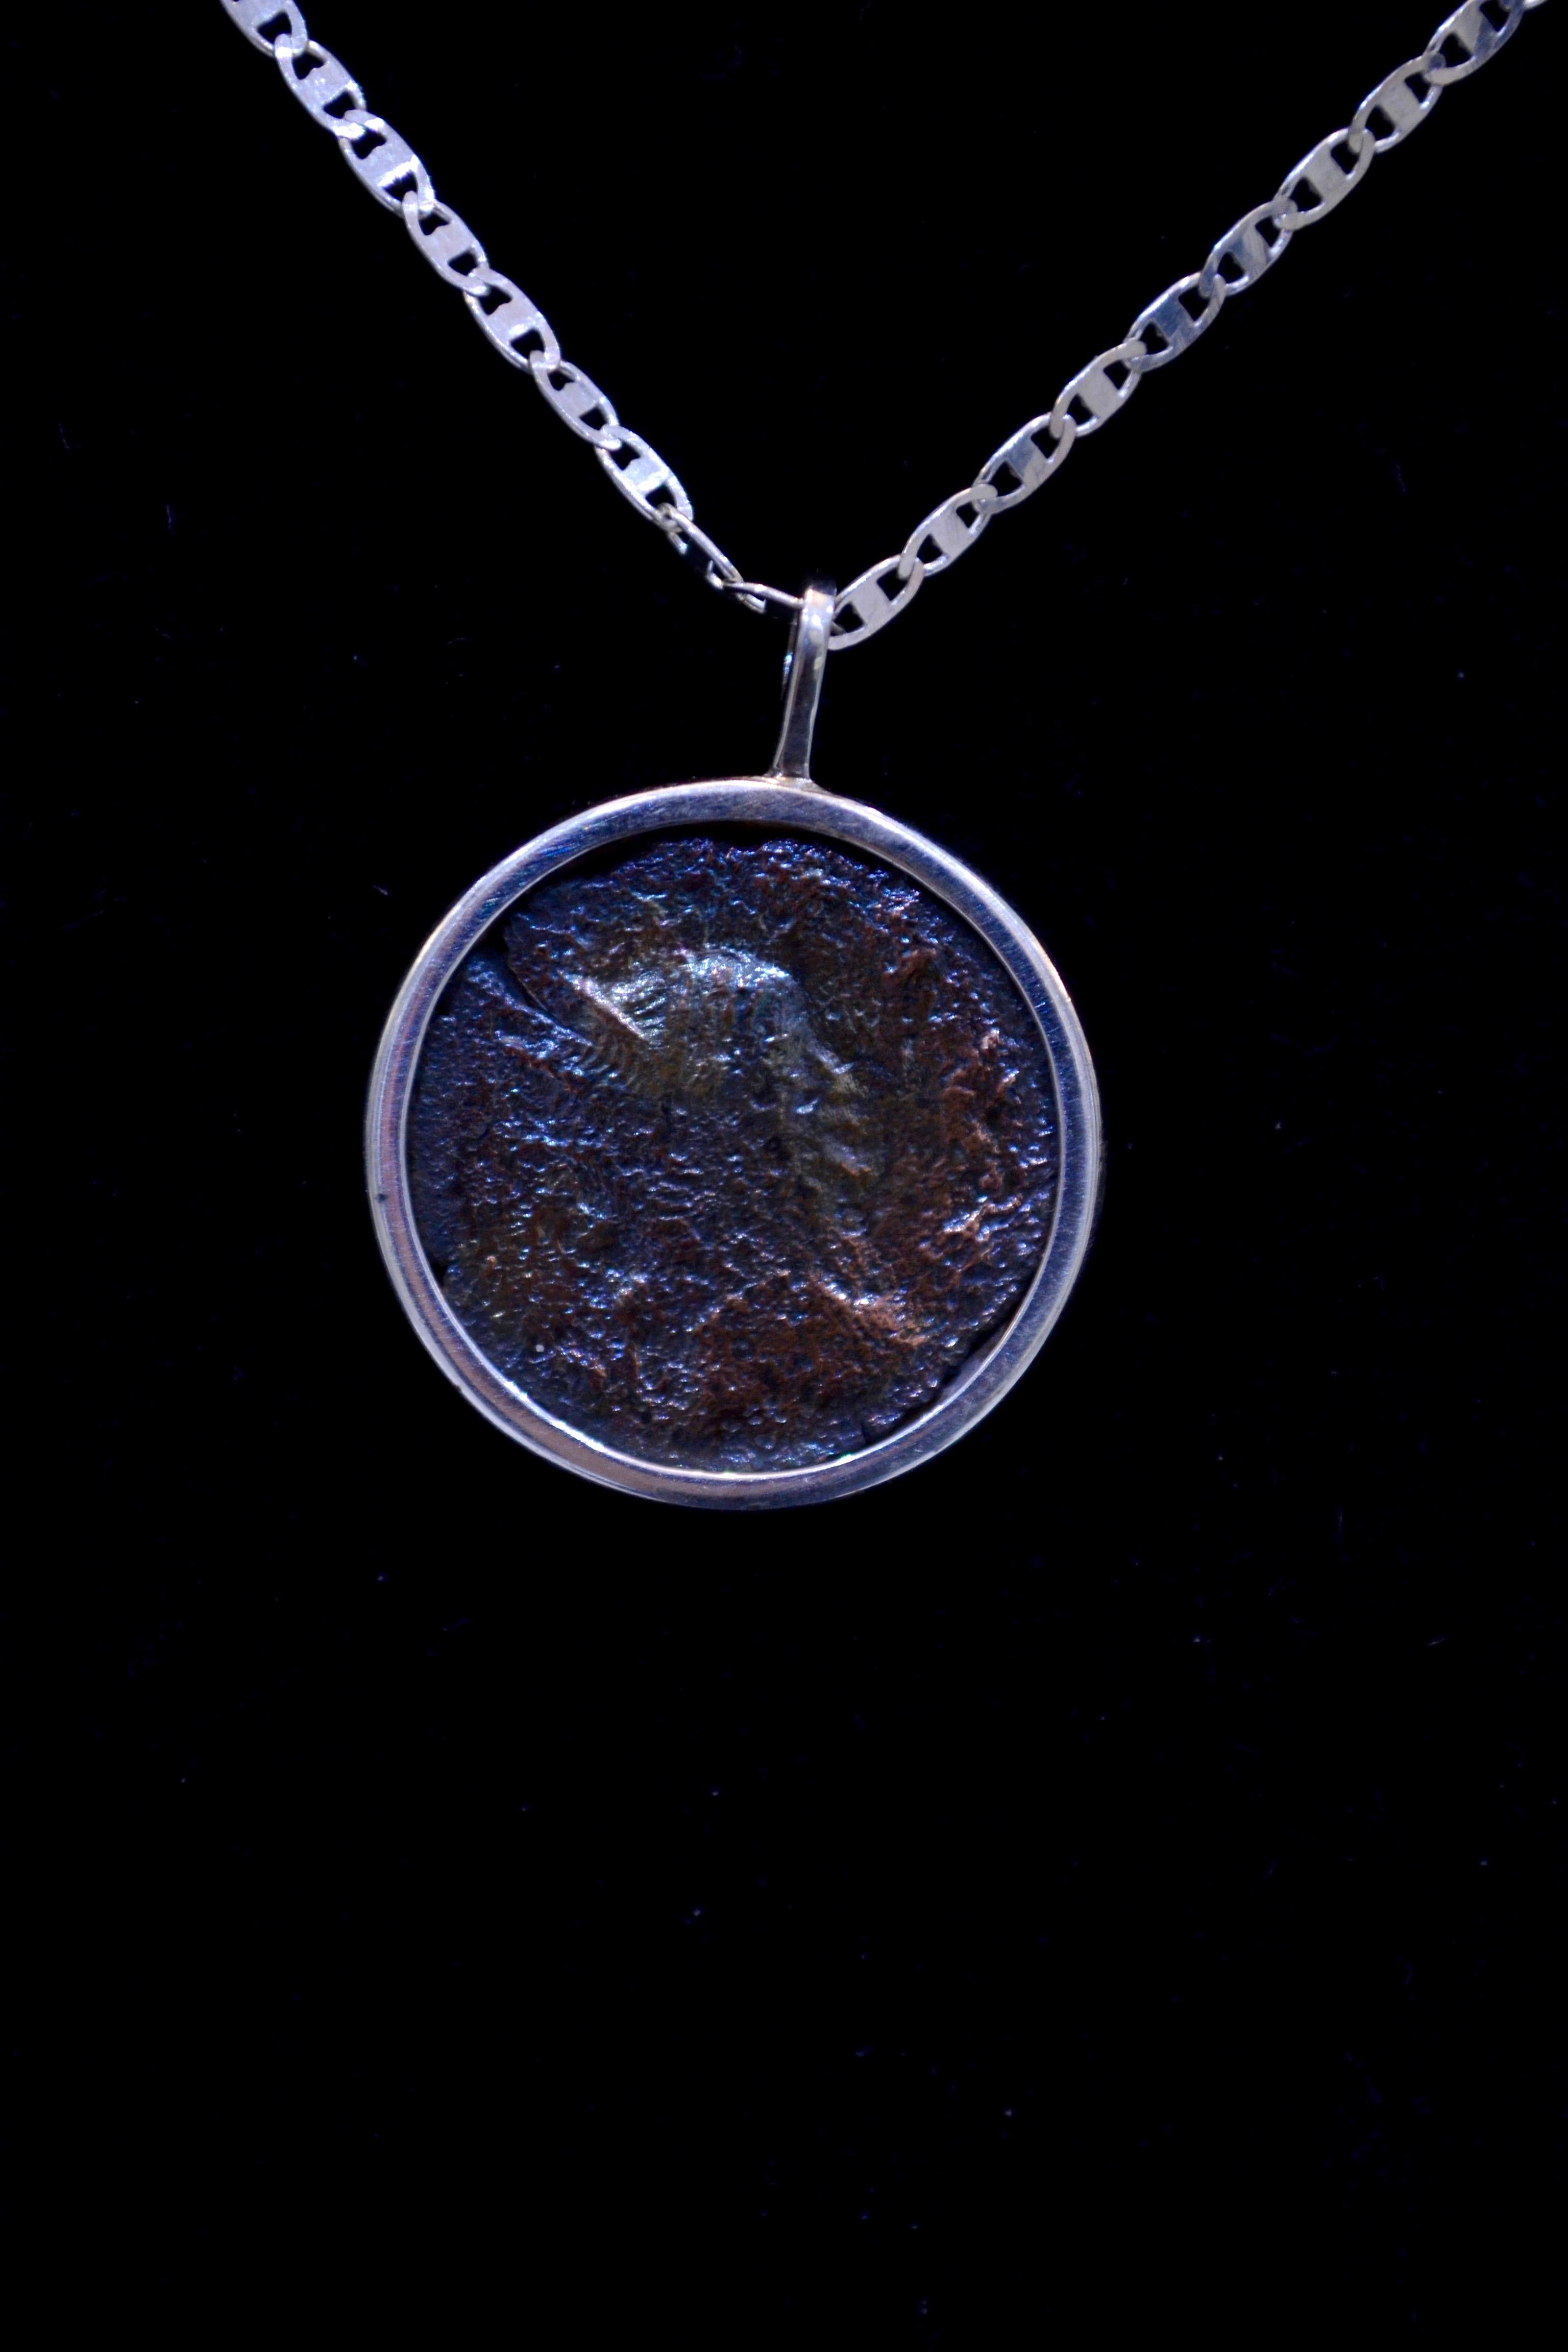 Authentische römische Bronzemünze (ca. 27 v. Chr. - 476 n. Chr.) an einer zeitgenössischen Silberkette. Bereit, getragen zu werden!

Bronzemünze aus dem großen Römischen Reich, die fast 2.000 Jahre alt ist. Schönes Schillern.